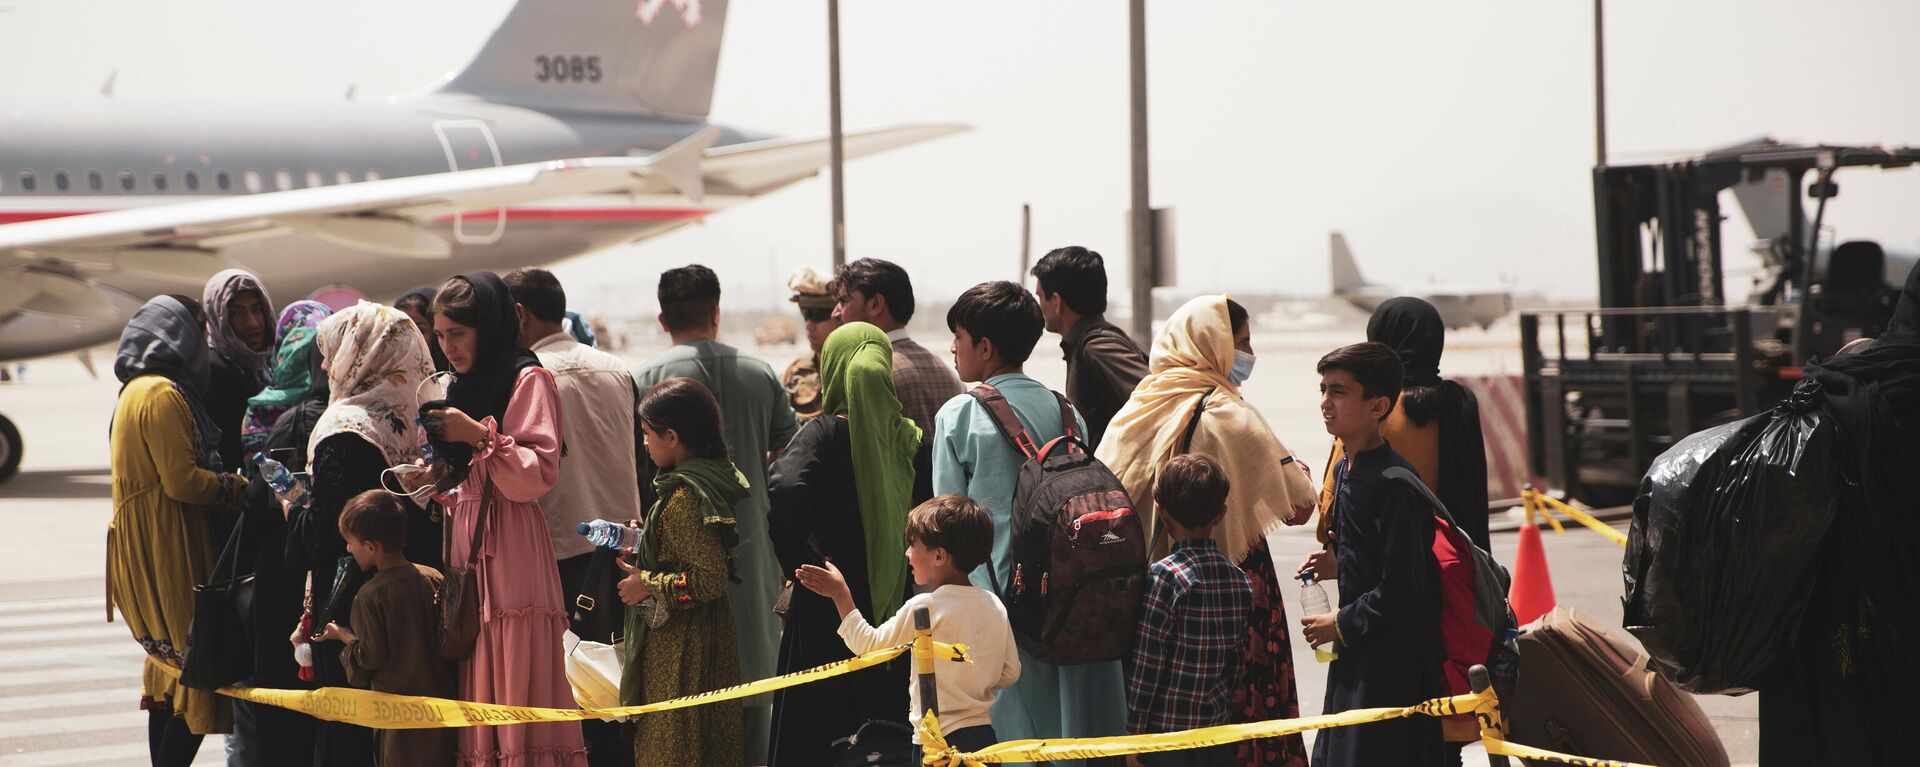 Civiles abordan un avión durante una evacuación en el Aeropuerto Internacional Hamid Karzai, Kabul - Sputnik Mundo, 1920, 19.08.2021